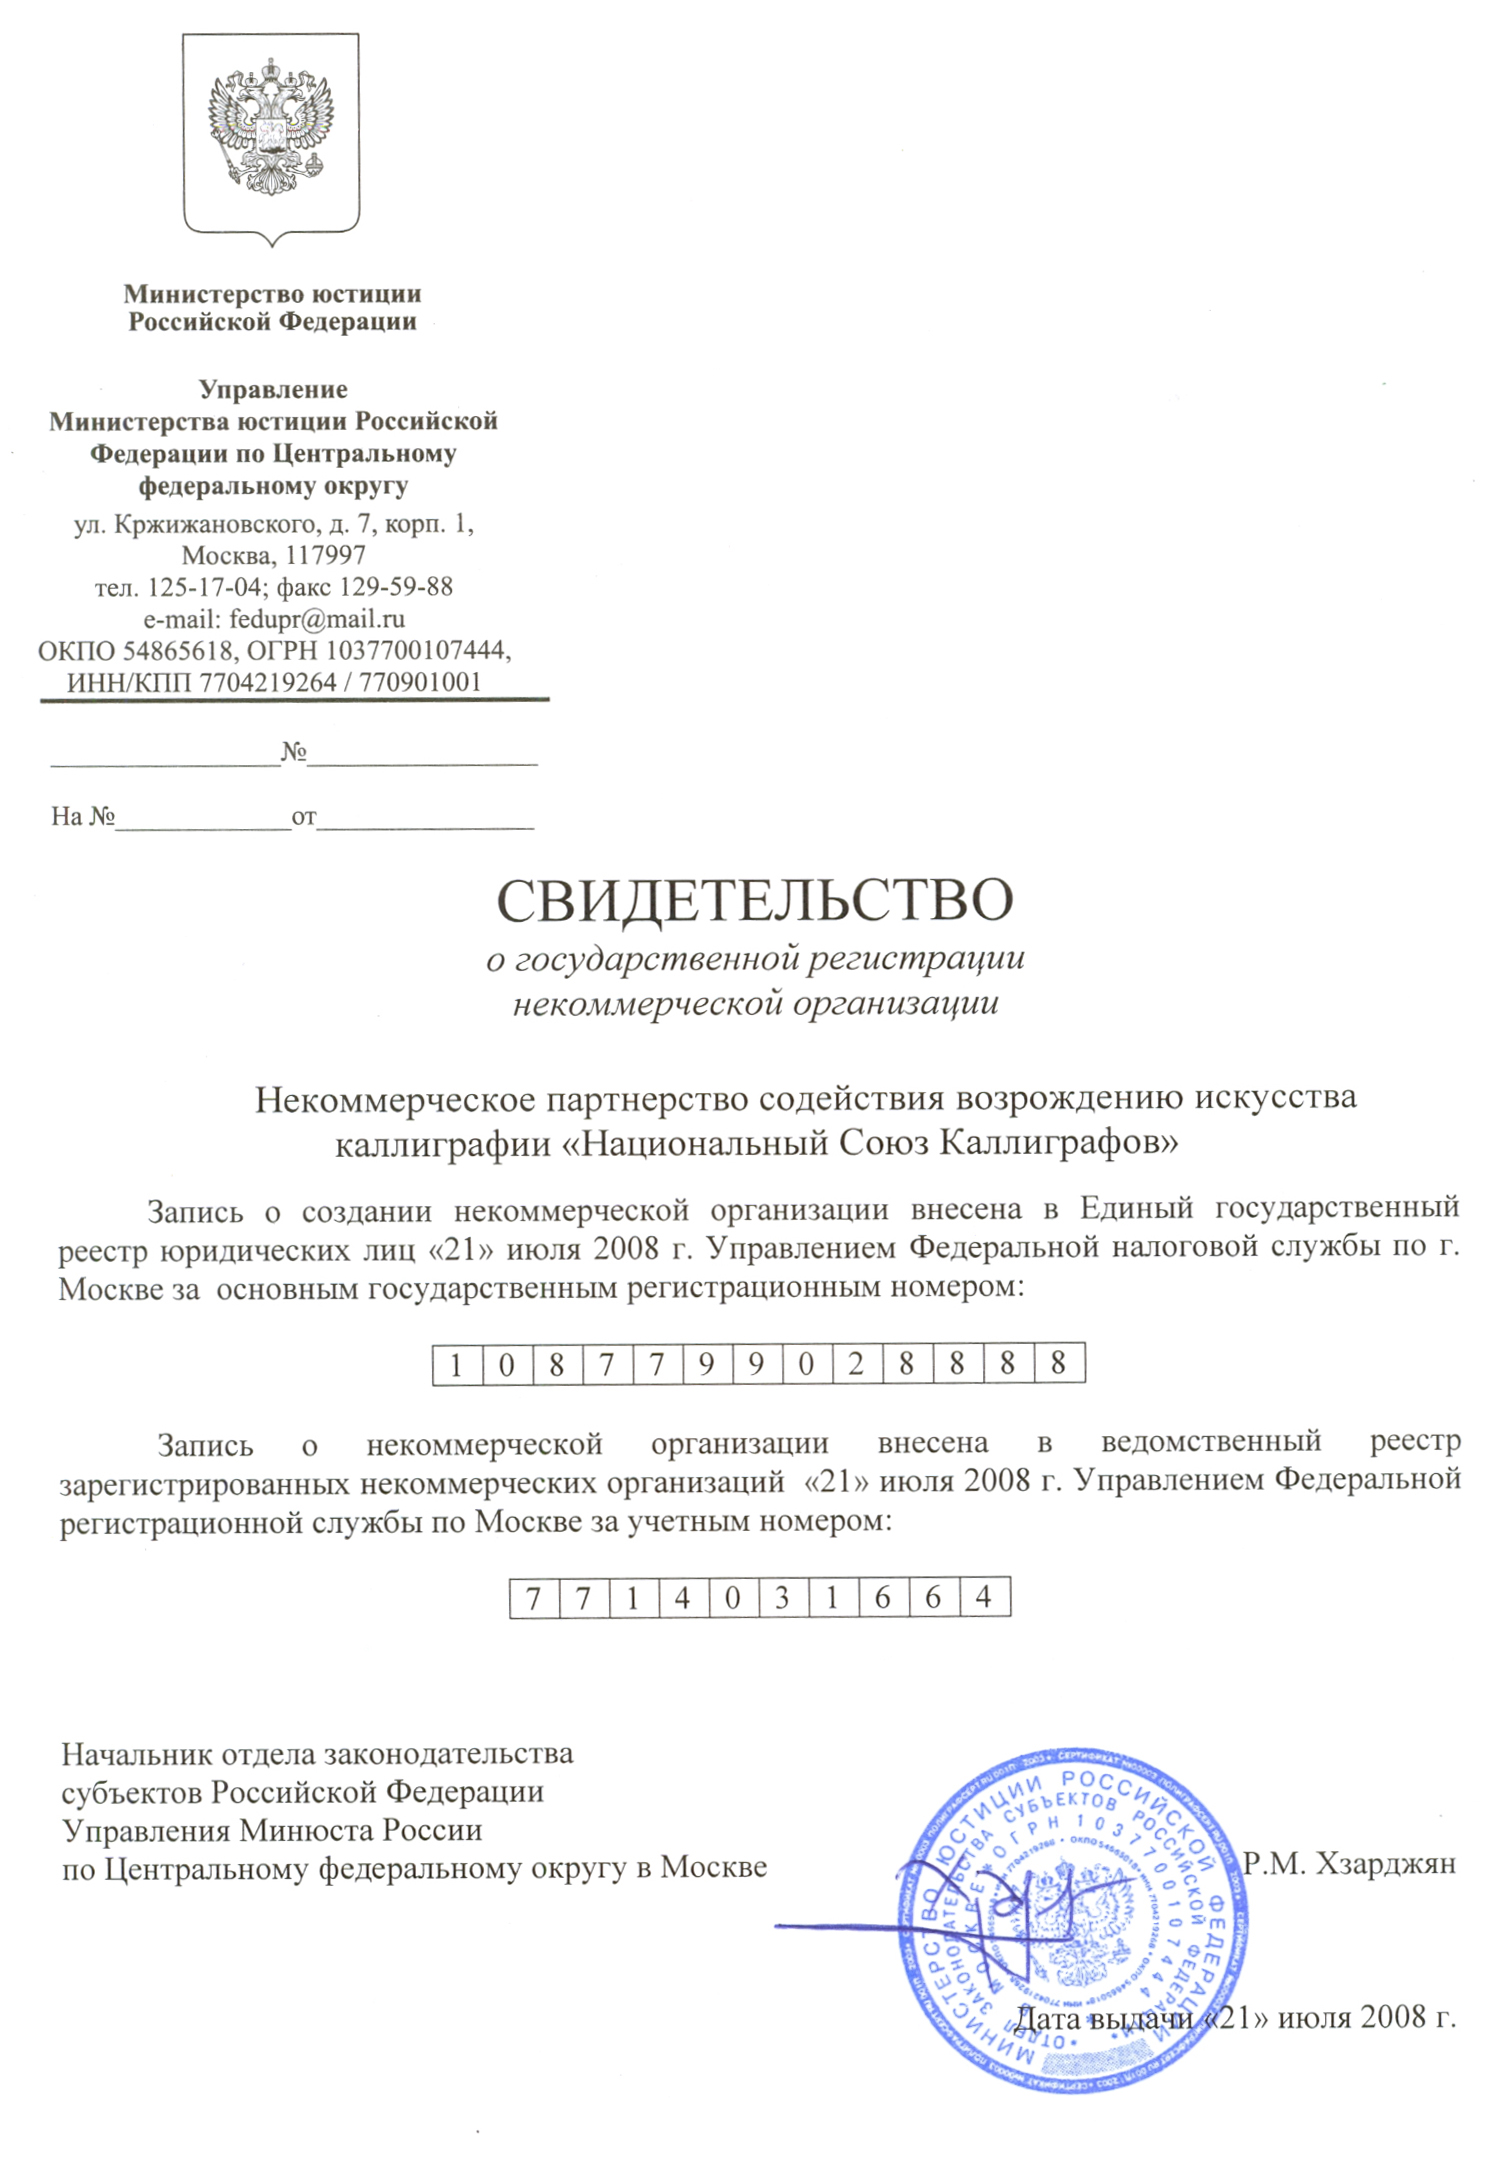 Национальный Союз Каллиграфов официально зарегистрирован в Министерстве юстиции